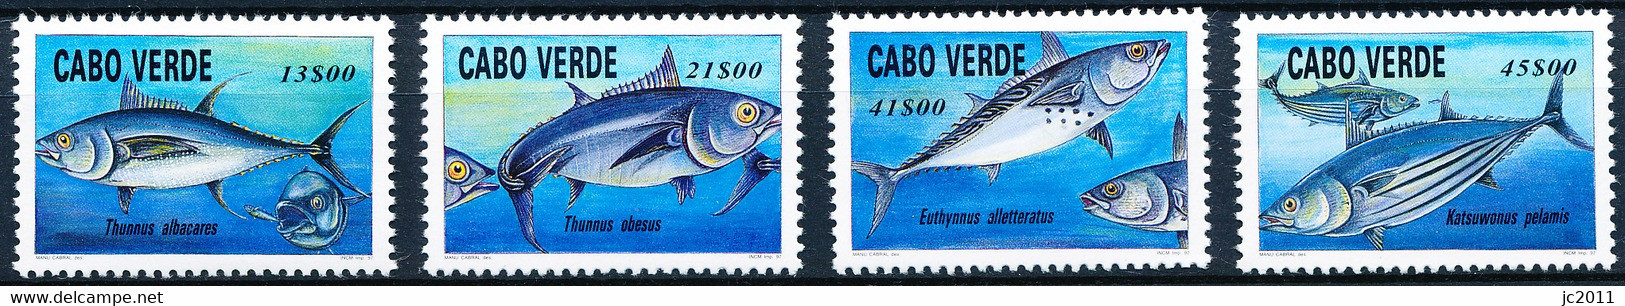 Cabo Verde - 1997 - Tuna Fish - MNH - Cape Verde